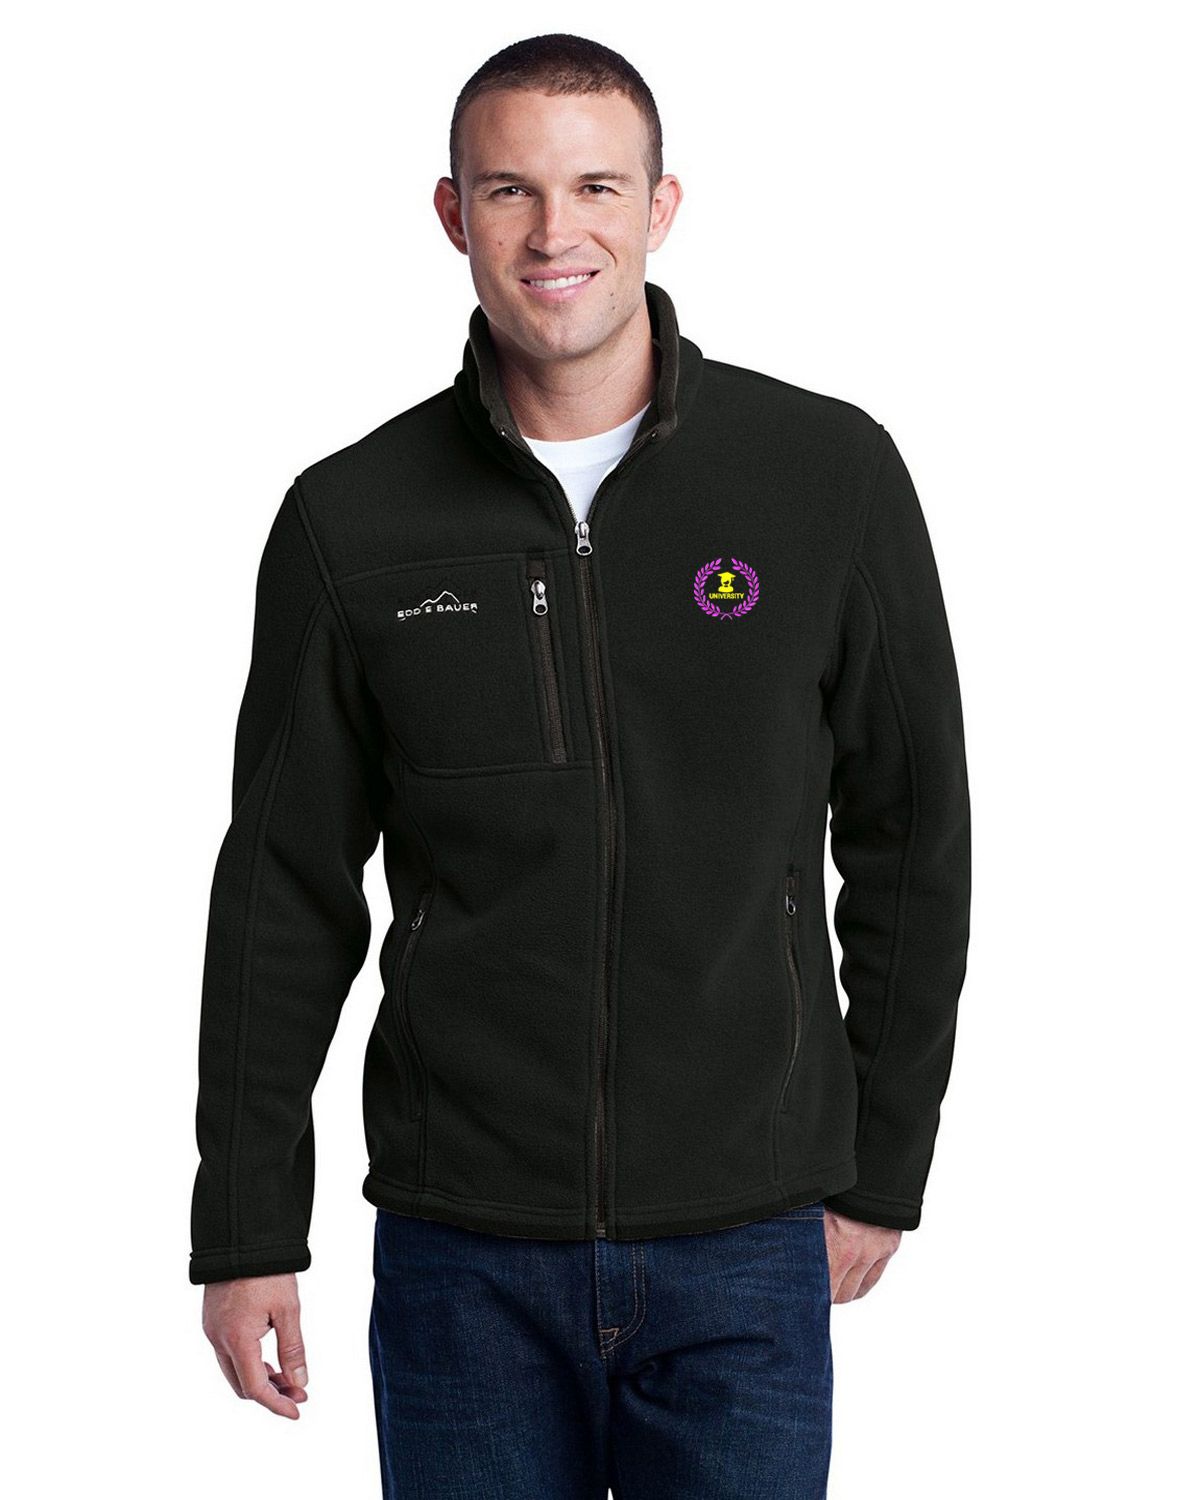 Eddie Bauer EB200 Full Zip Fleece Jacket - For Men